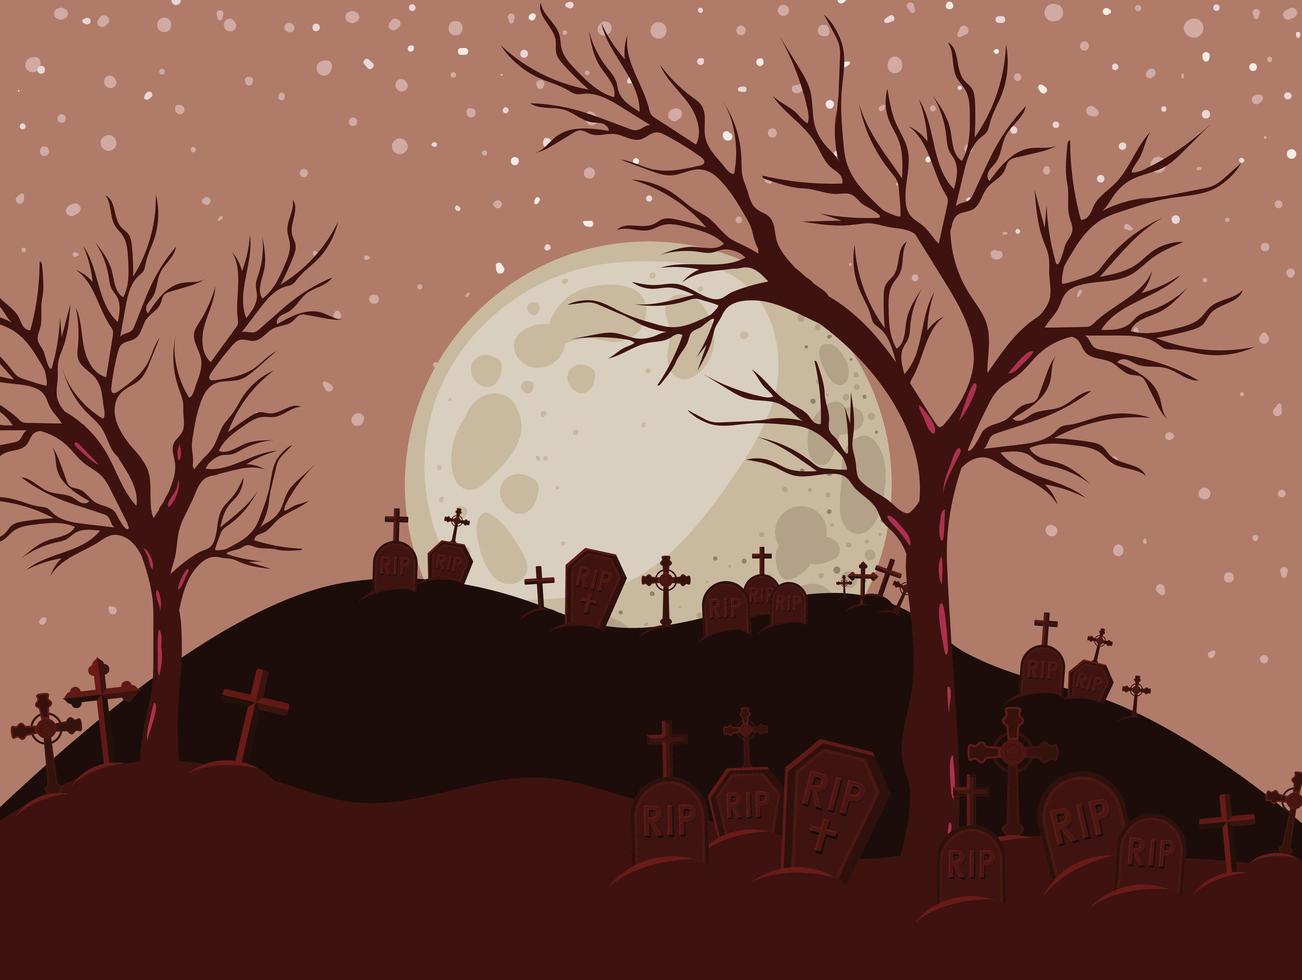 halloween-achtergrond met begraafplaatsscène bij nacht vector